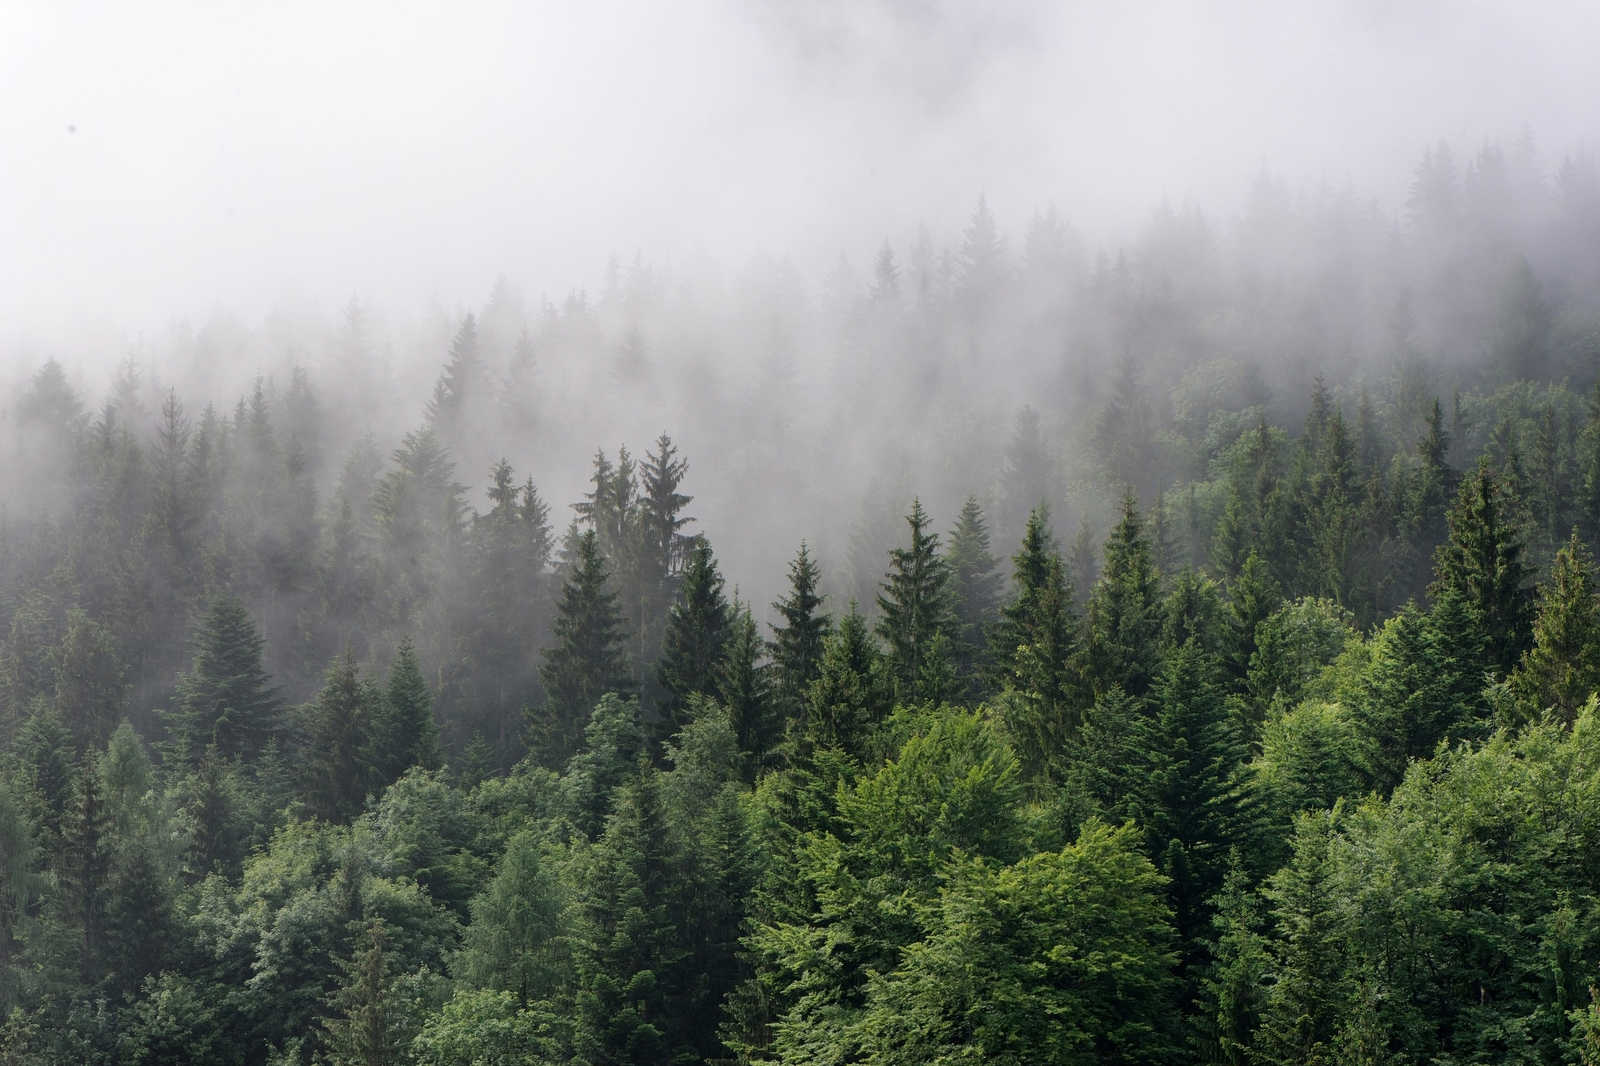             Canvas met bos van boven op een mistige dag - 0.90 m x 0.60 m
        